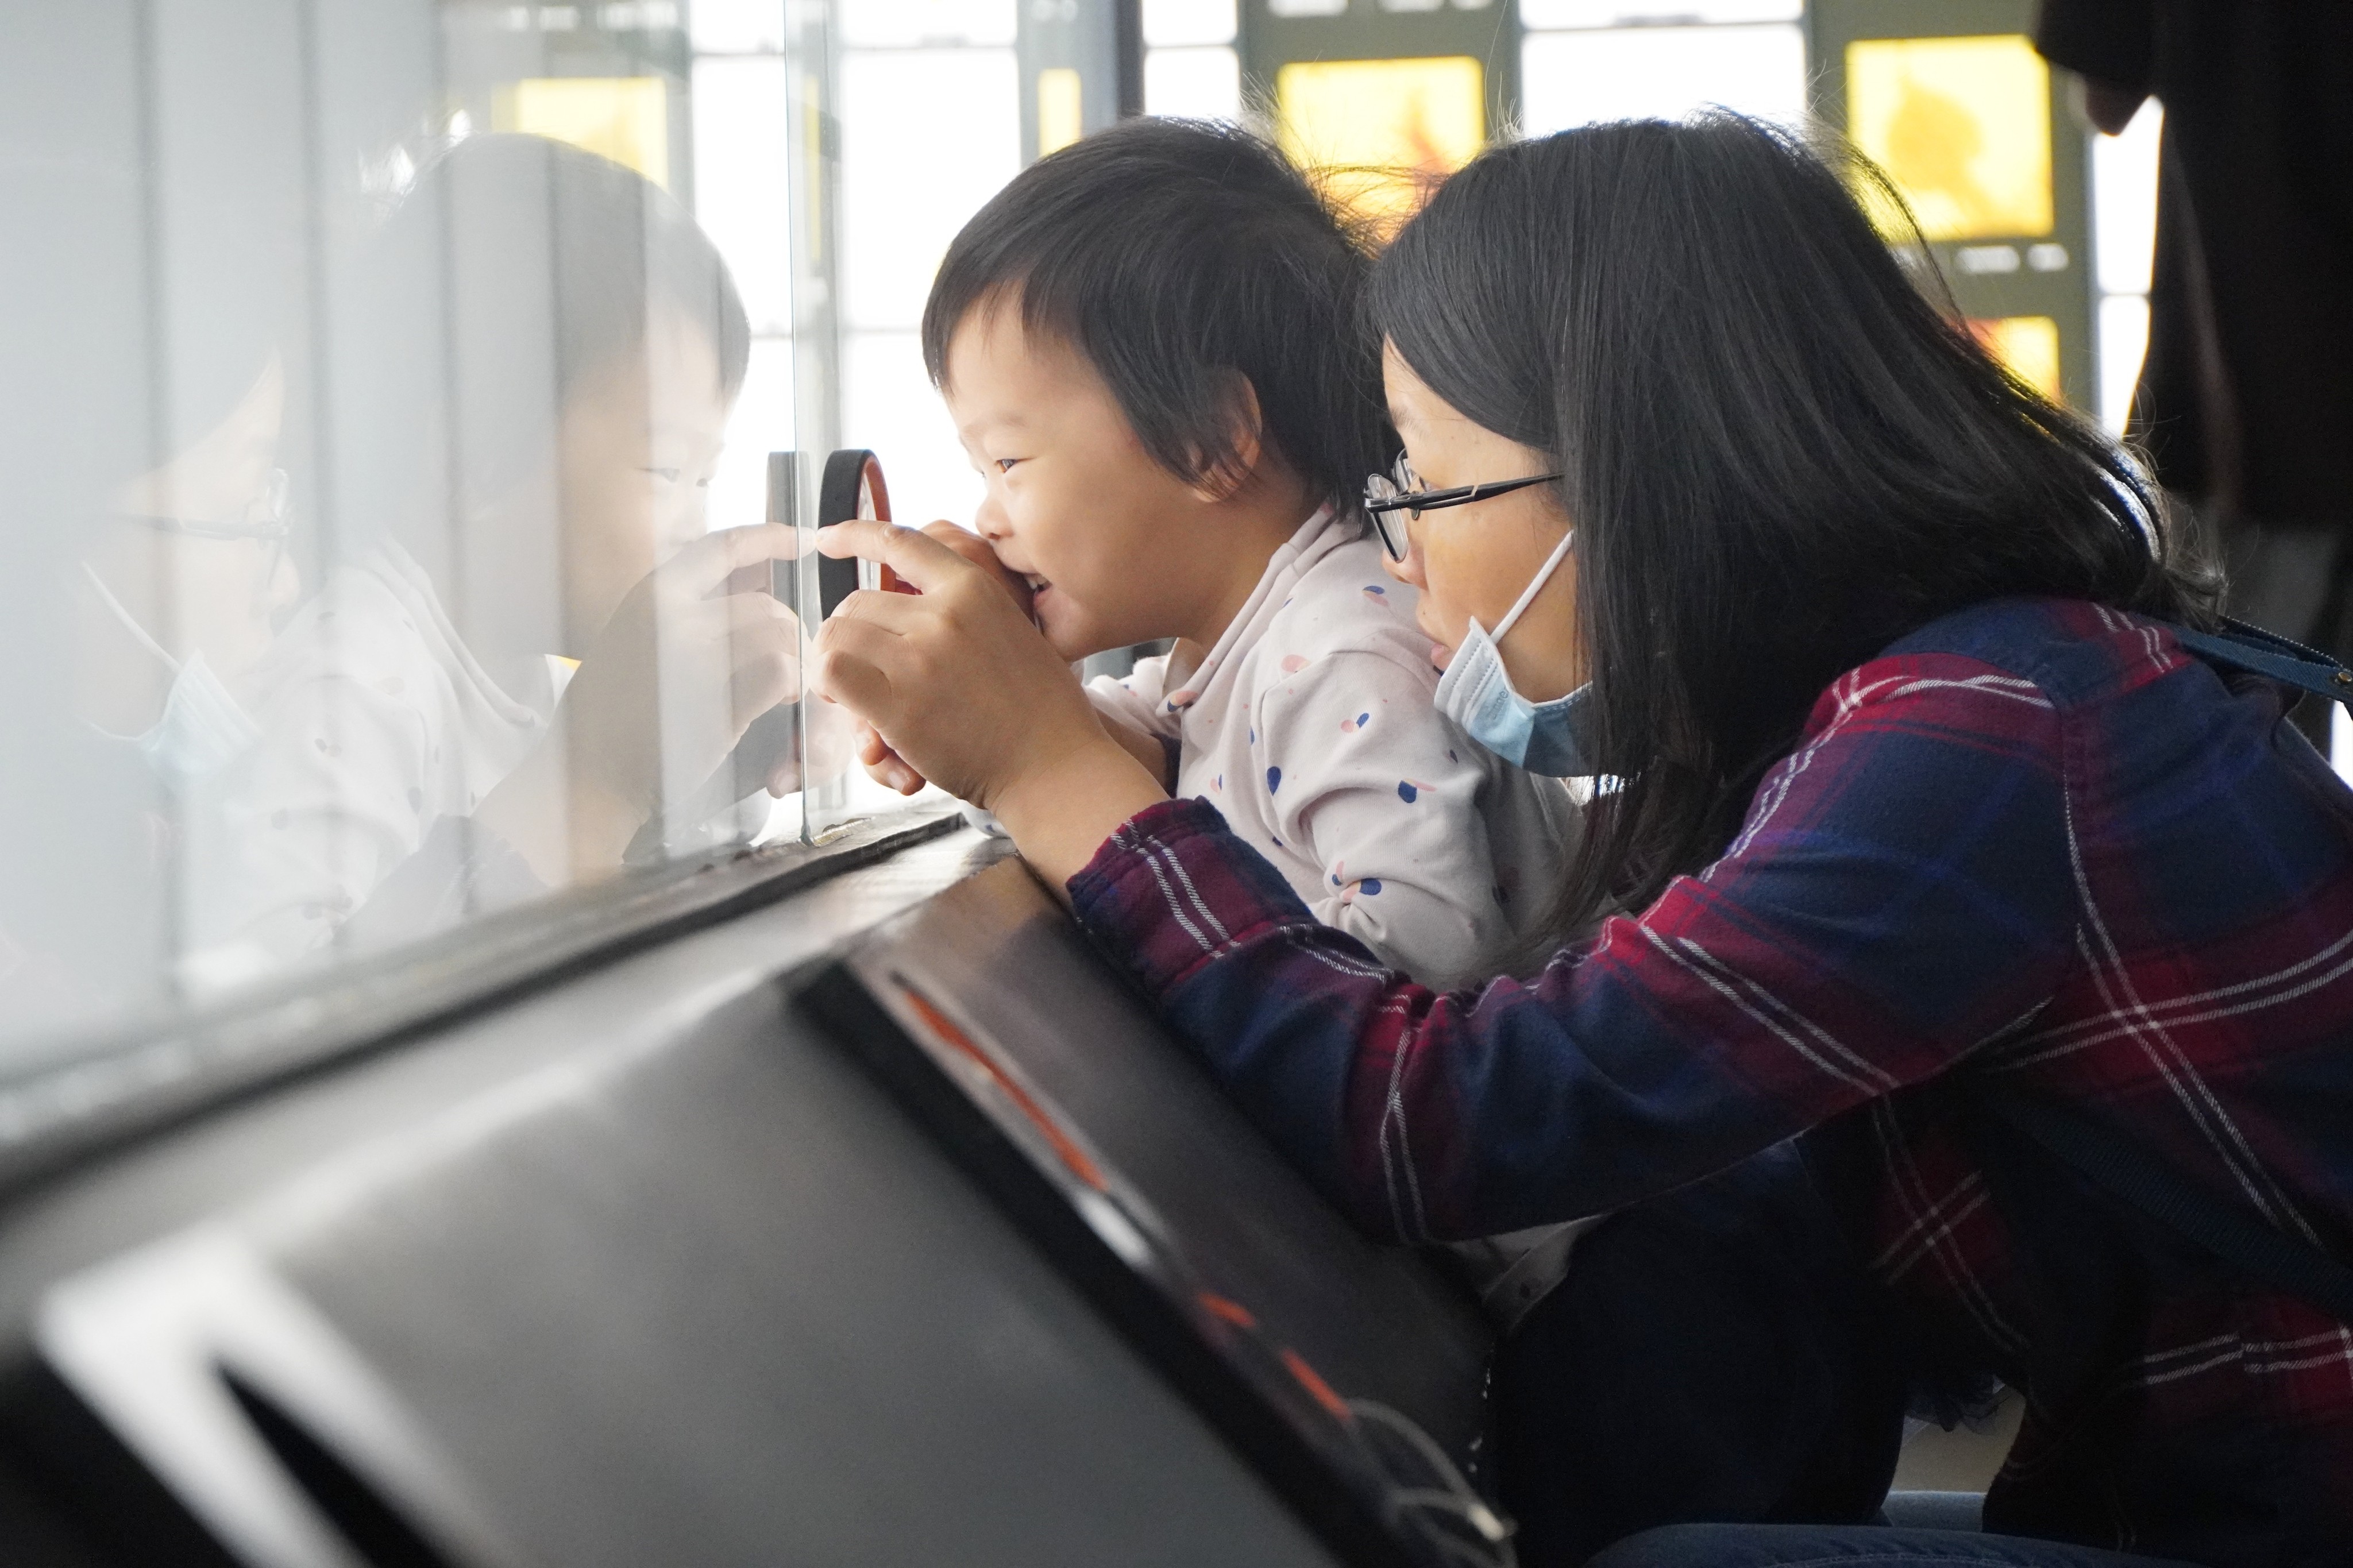 一位孩童在母亲的带领下，用放大镜观察琥珀的形态。王雅蝶 摄